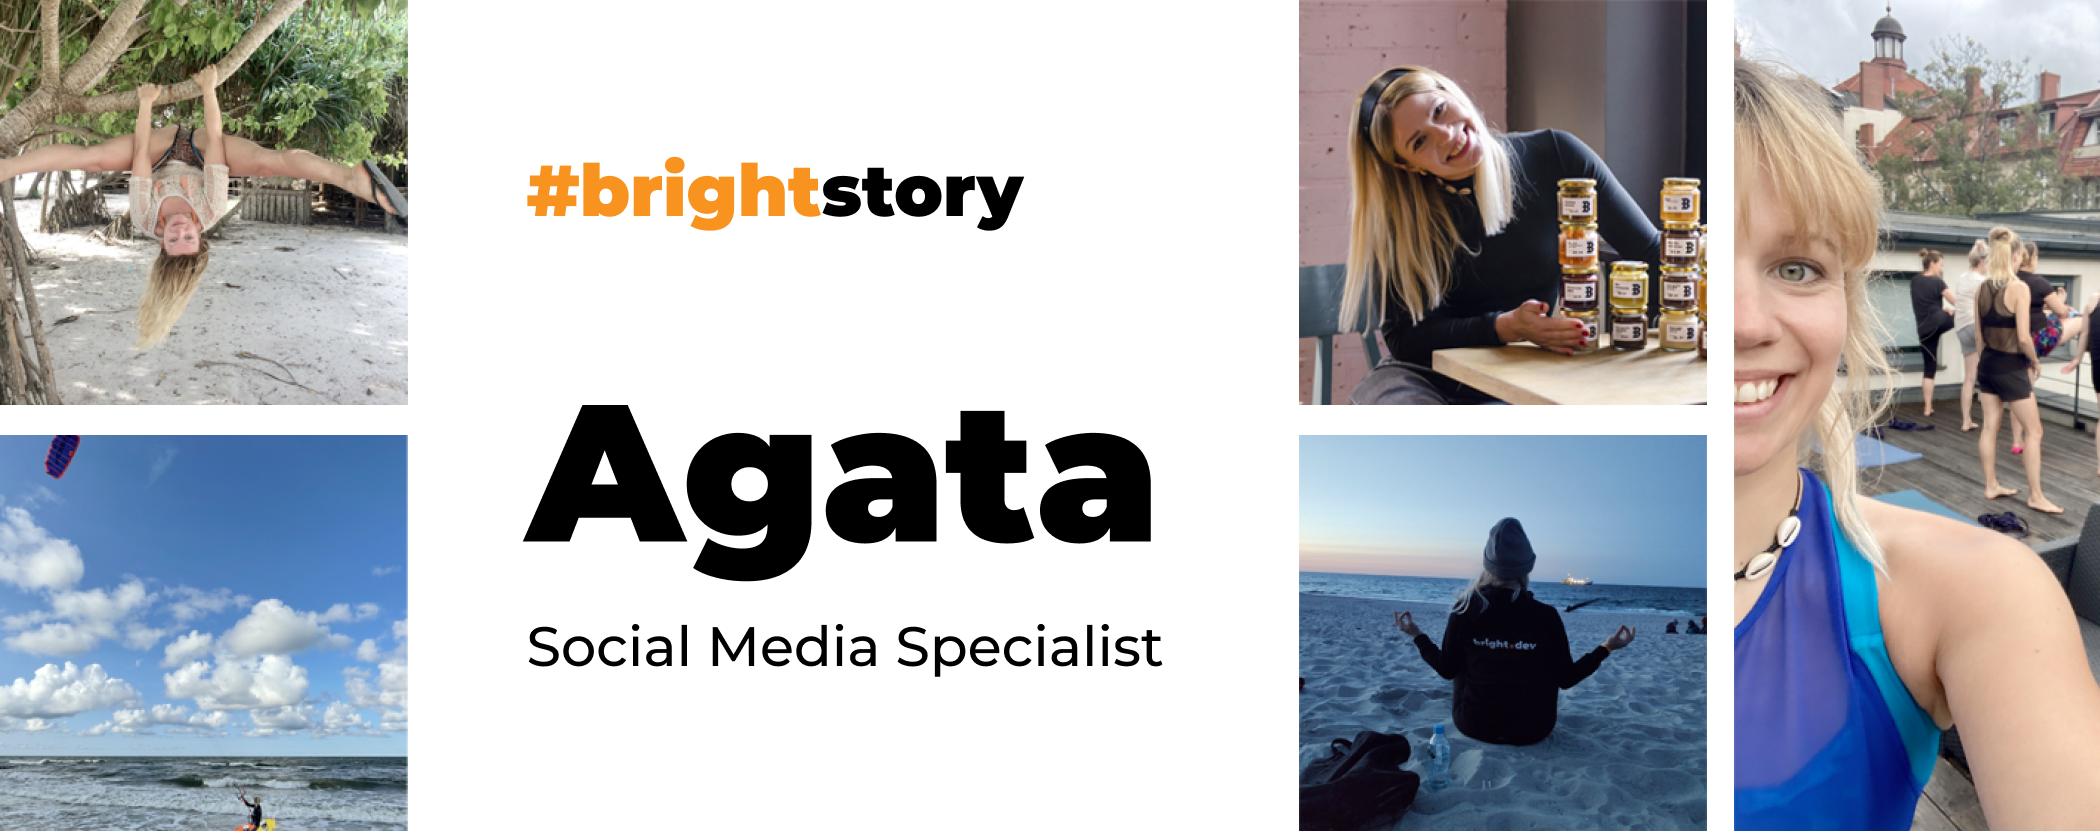 Agata's career story